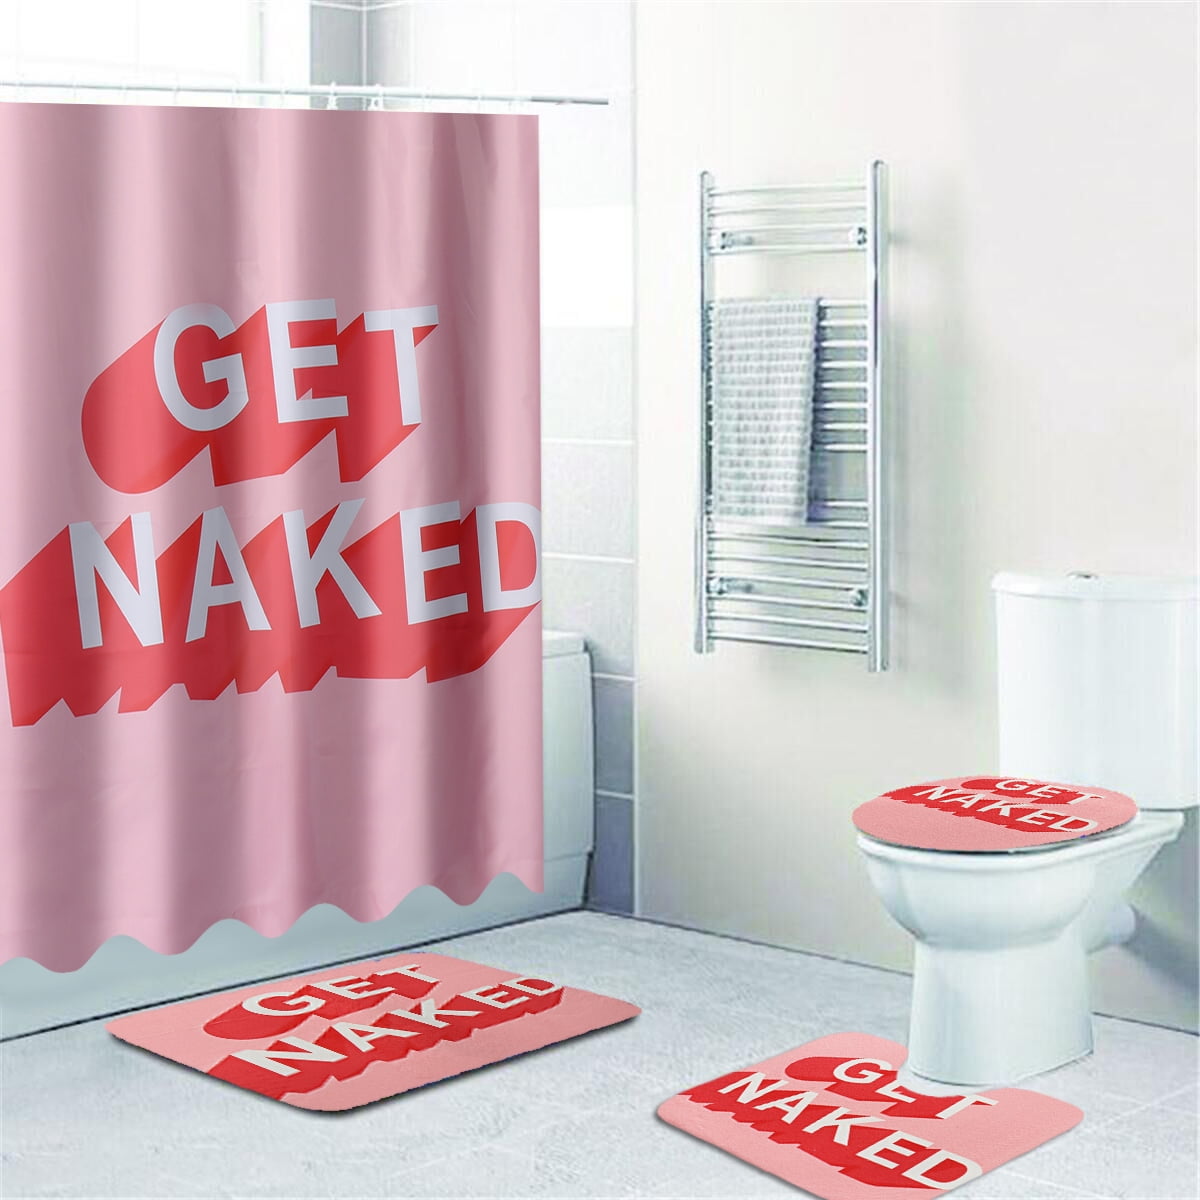 Naked Girl Shower Curtain Bathroom Rug Set Bath Mat Non-Slip Toilet Lid Cover